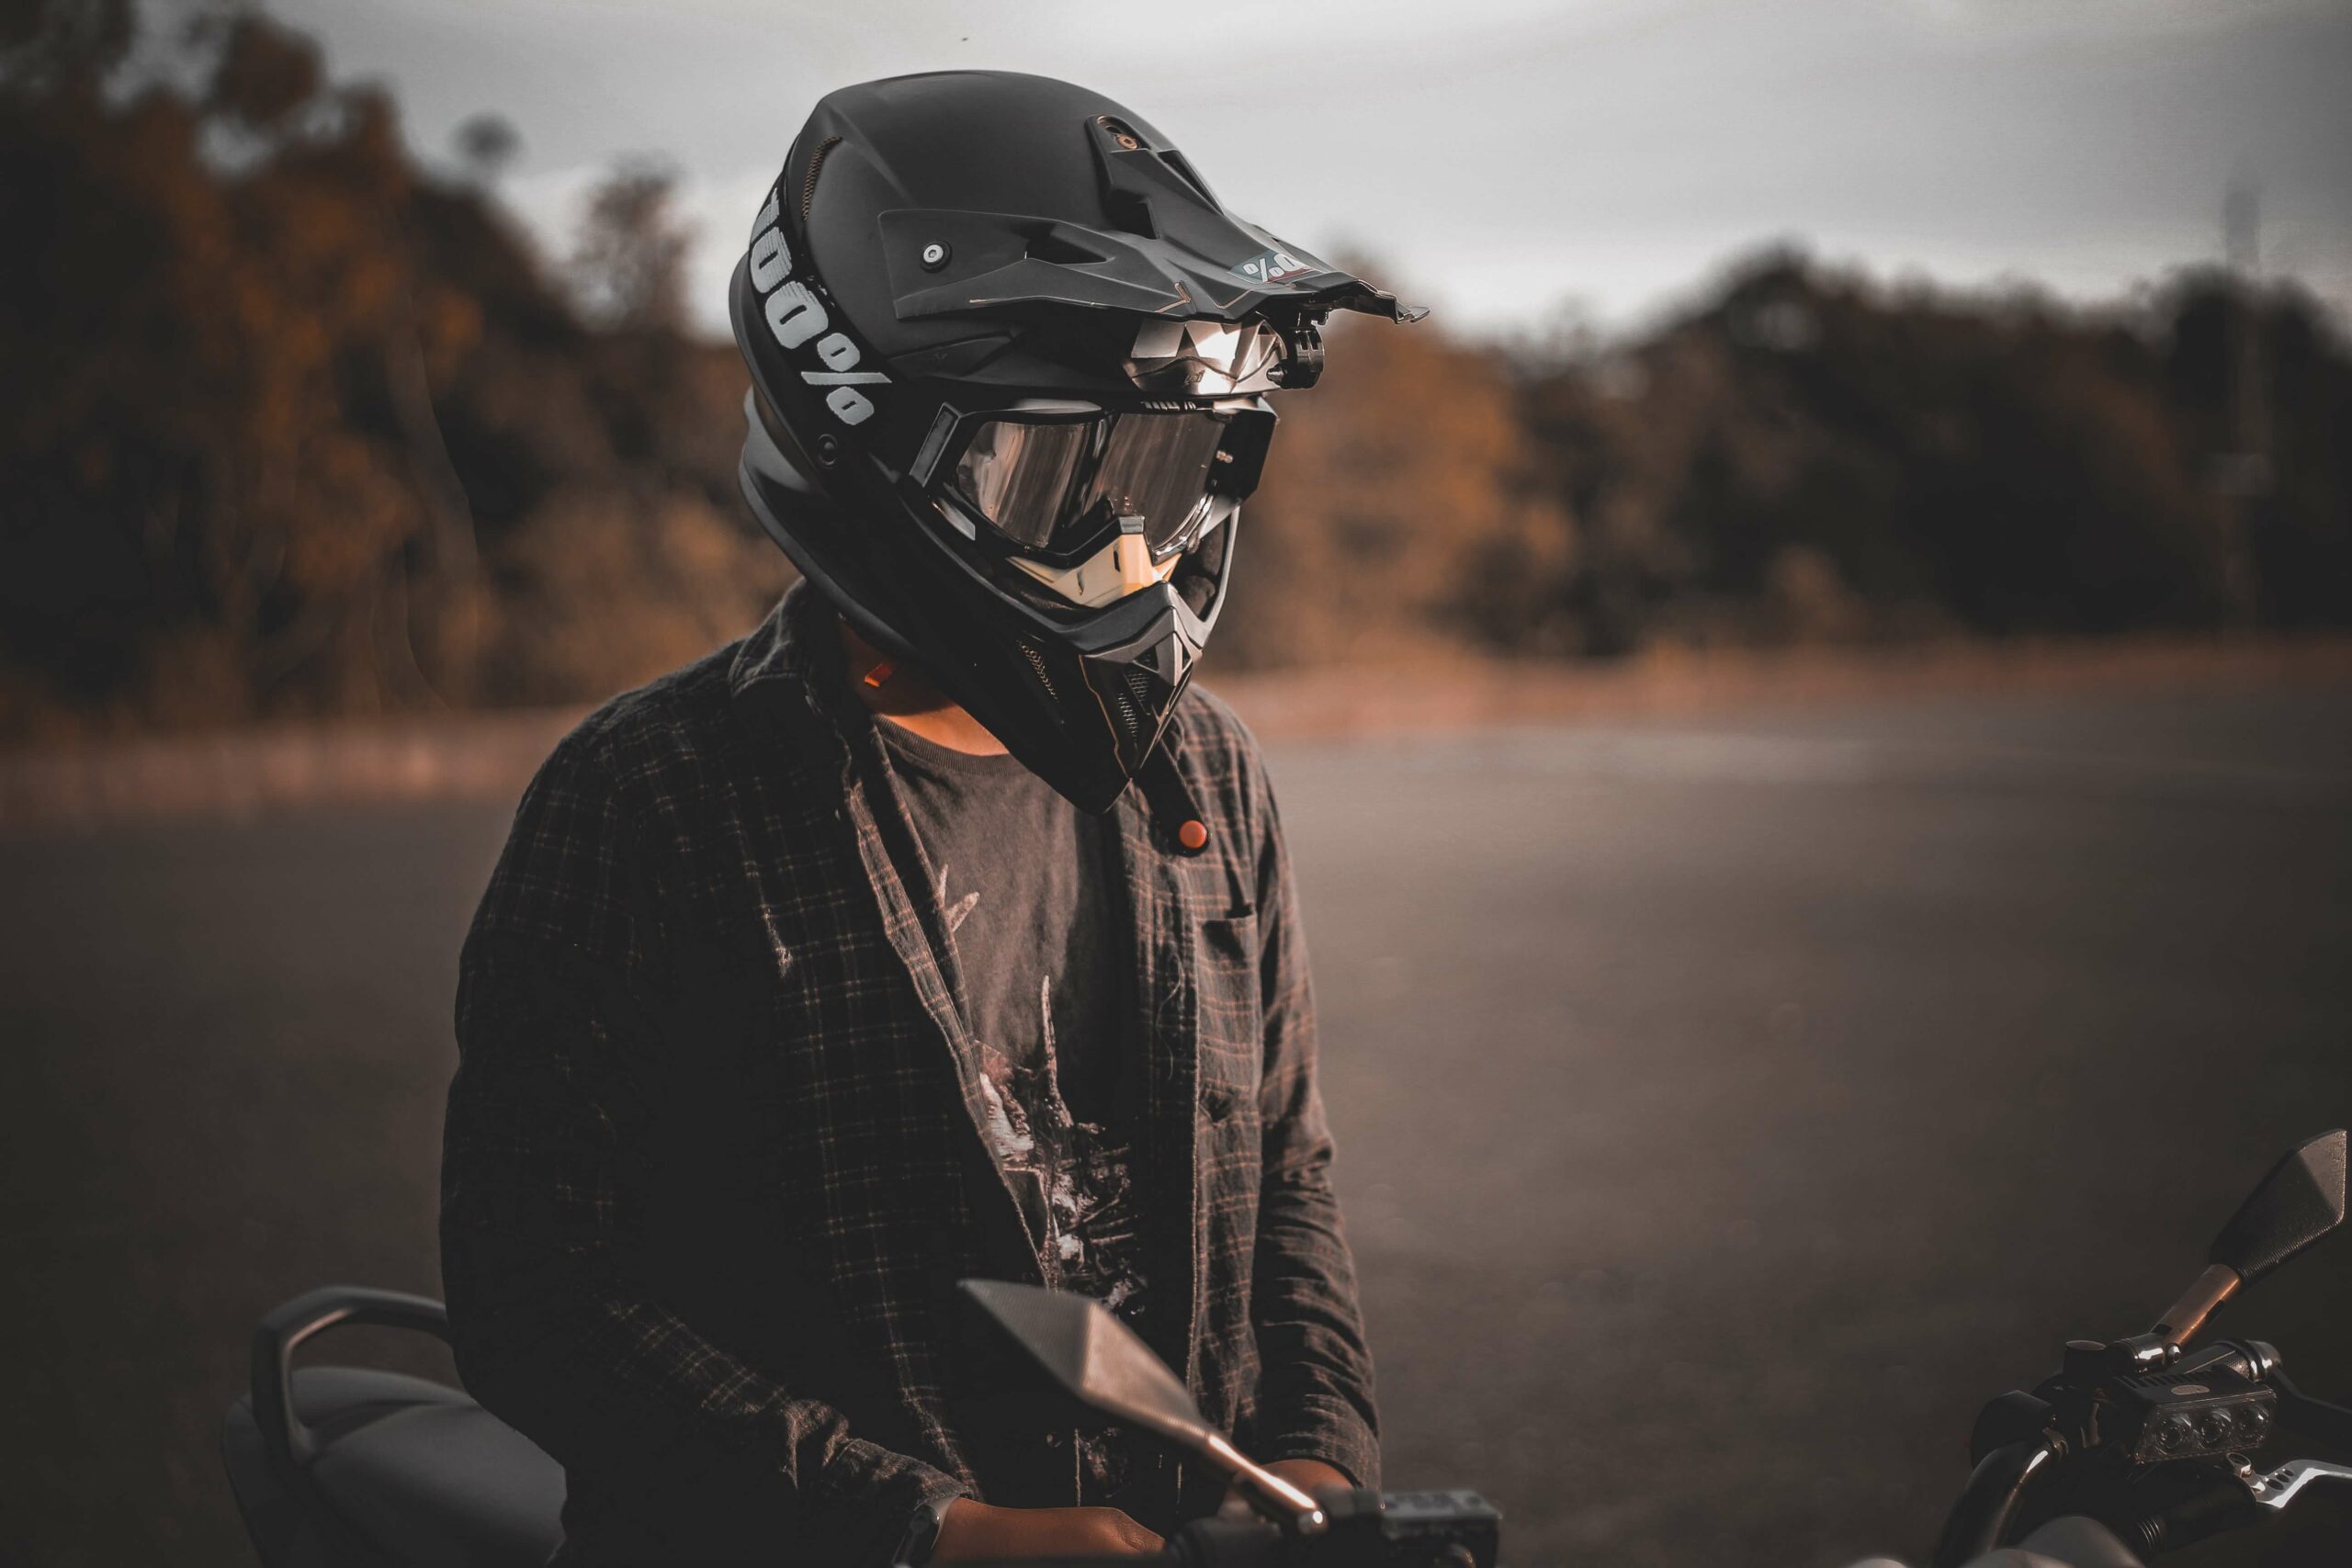 Les meilleurs accessoires pour équiper votre moto